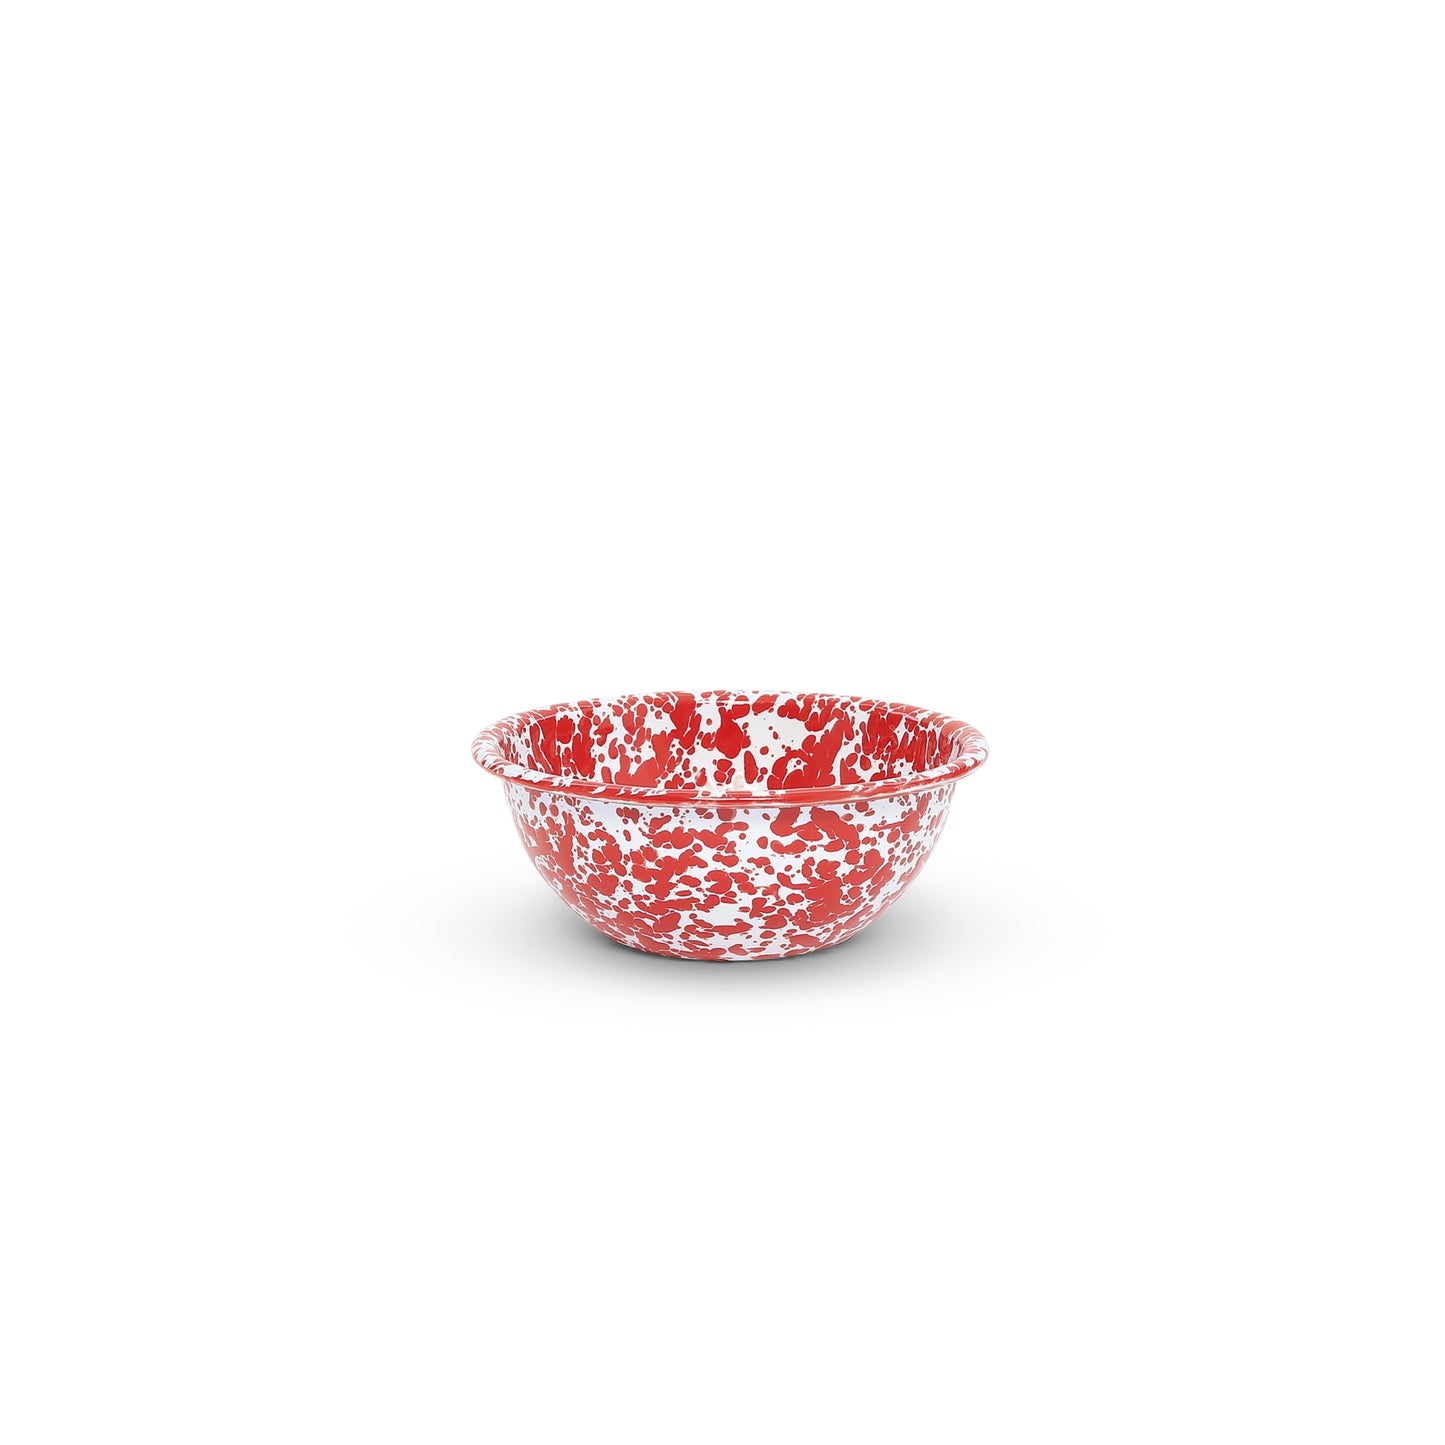 Splatter Enamelware 20 oz Cereal Bowl: Red & White